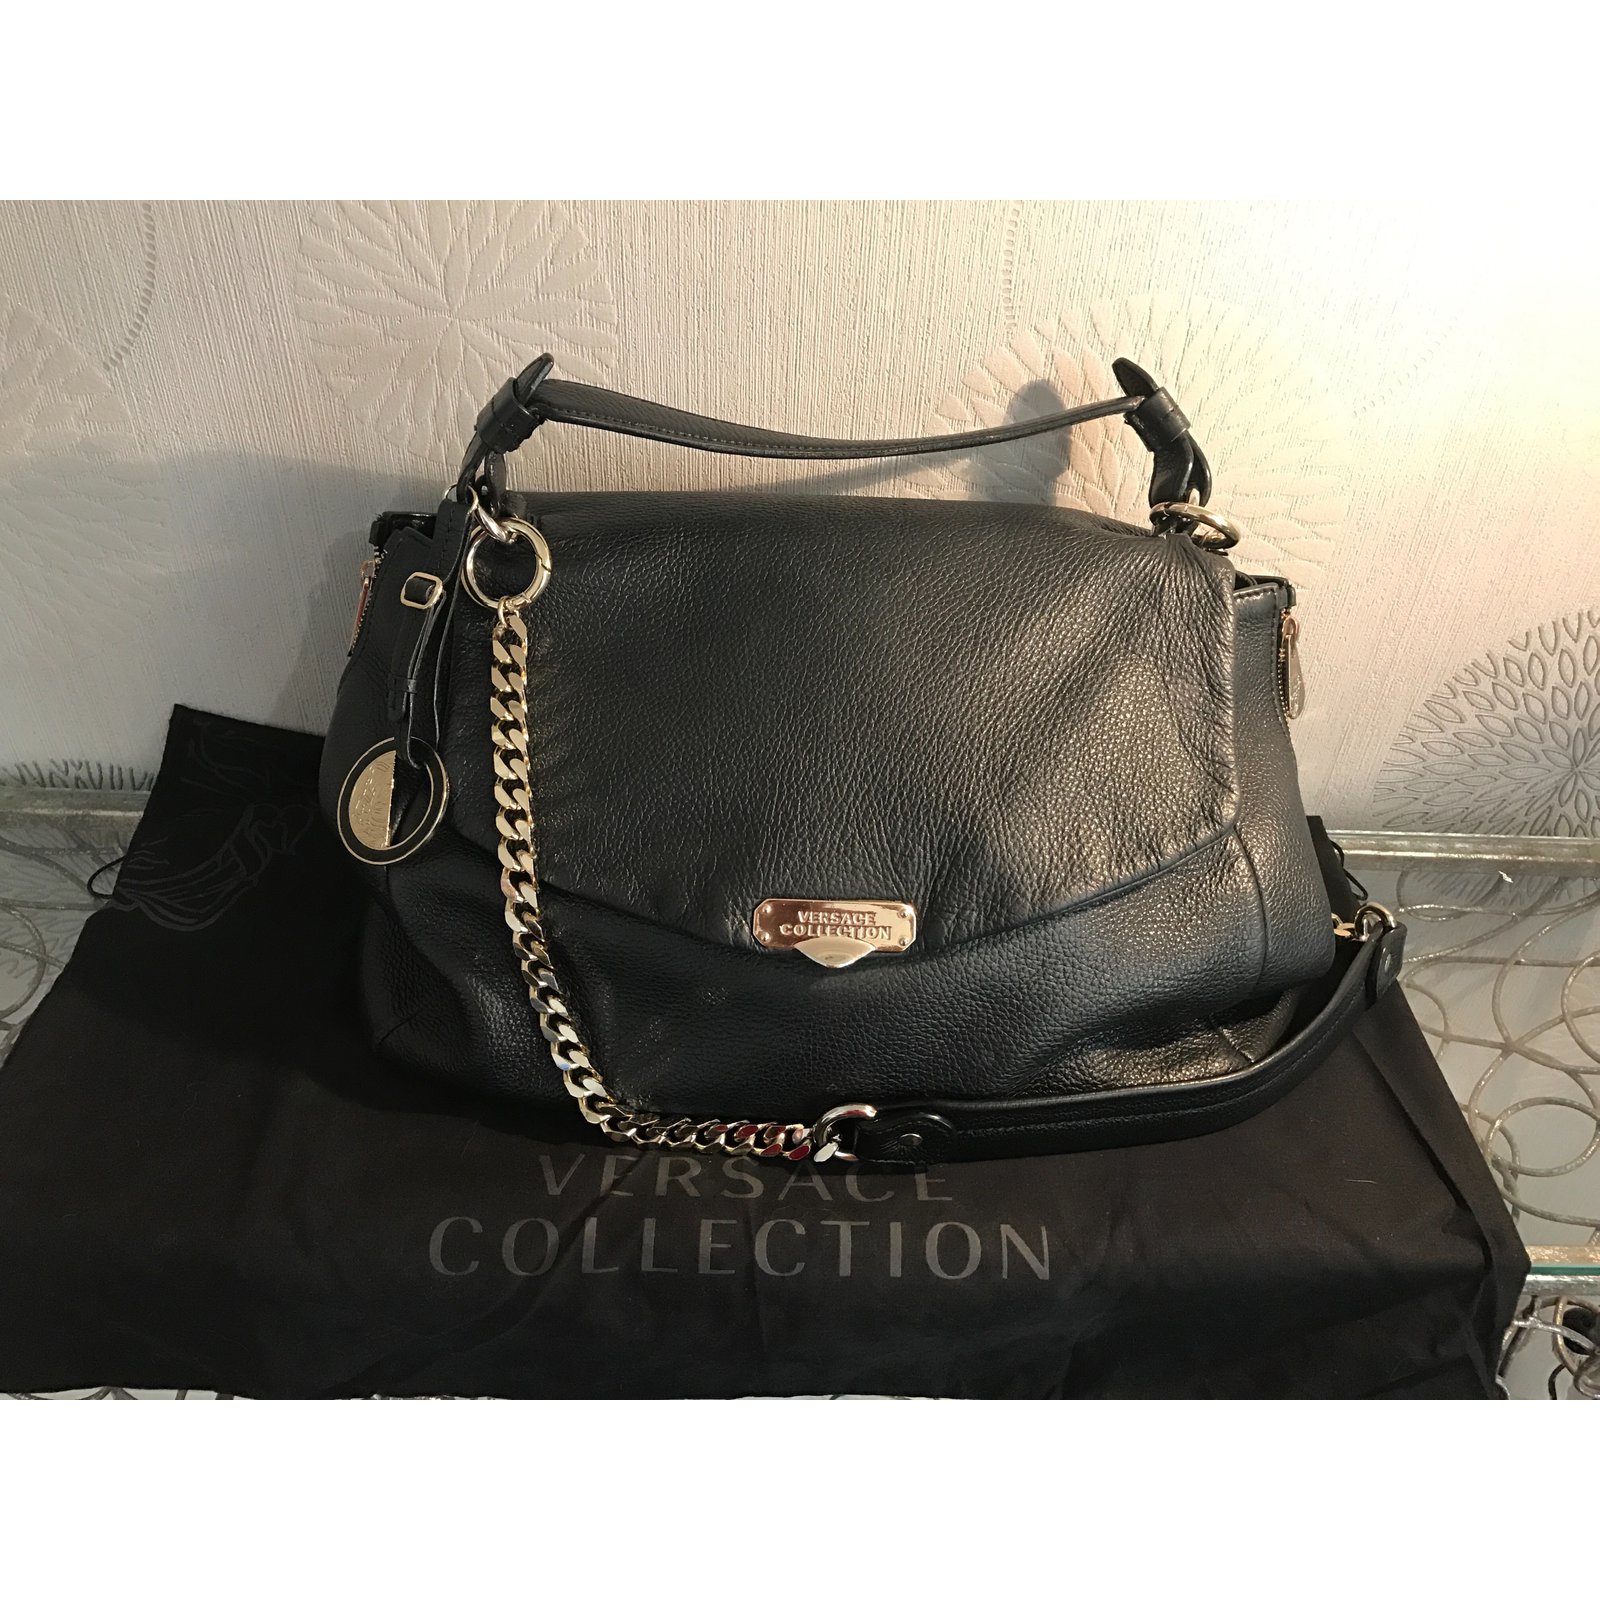 versace collection shoulder bag